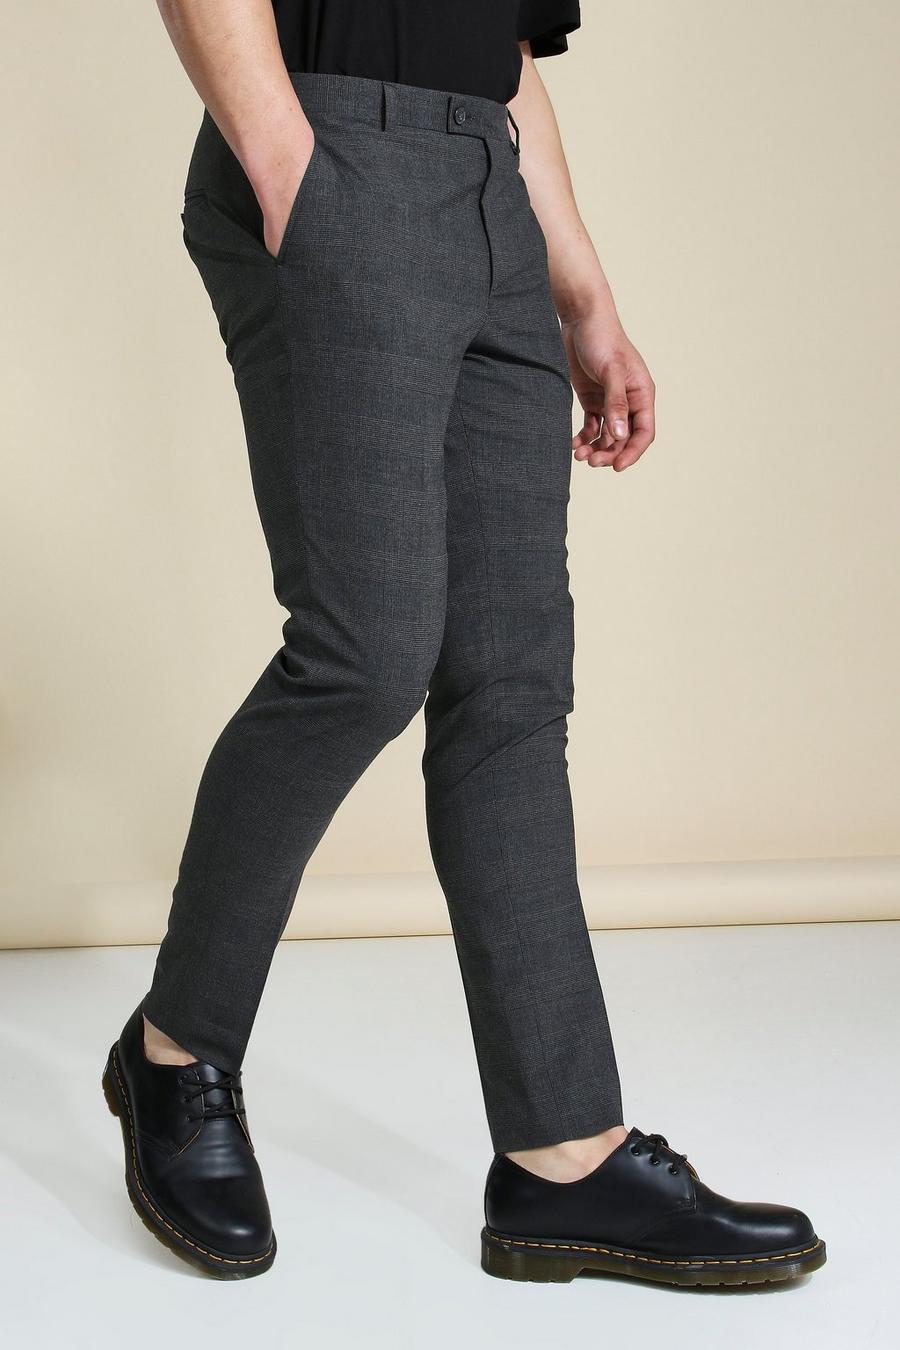 מכנסי סקיני אפורים אלגנטיים עם הדפס משבצות